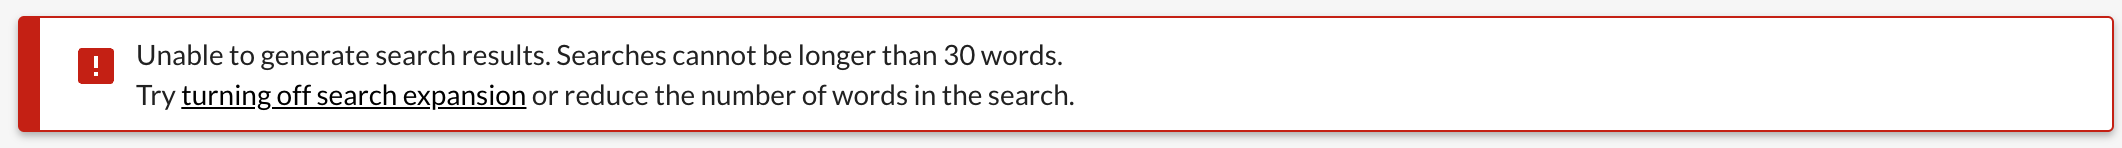 Screenshot of text: "Impossible de générer les résultats de recherche. Les recherches ne peuvent pas dépasser 50 mots. Désactivez l'élargissement de la recherche.''